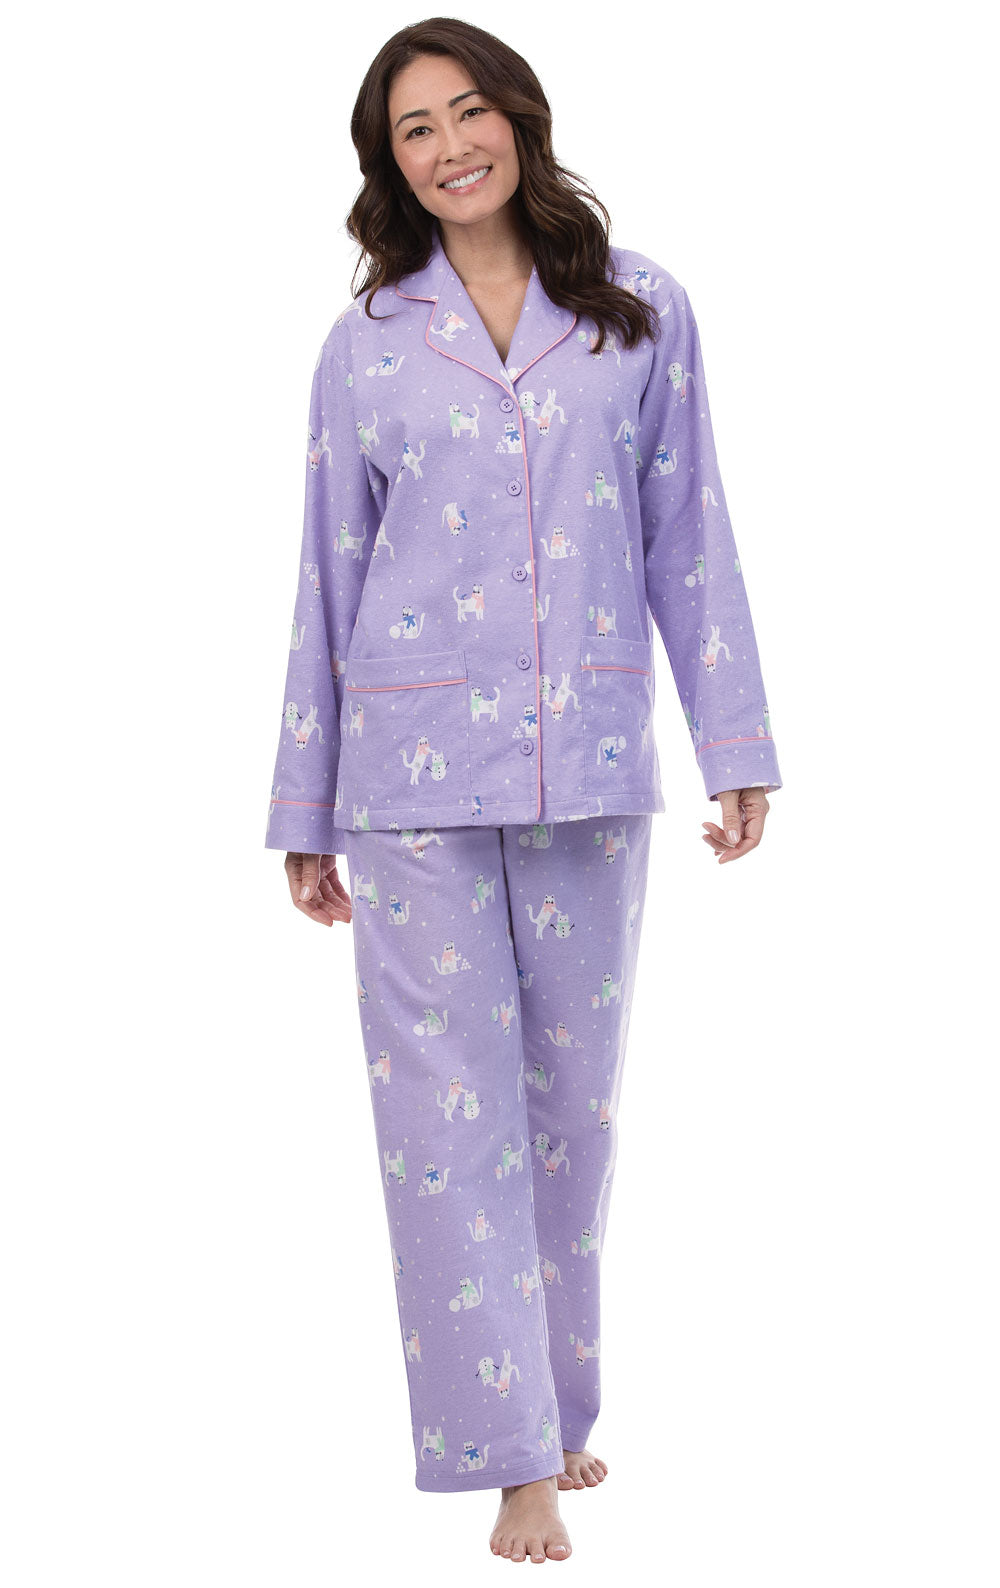 Purrfect Flannel Boyfriend Pajamas